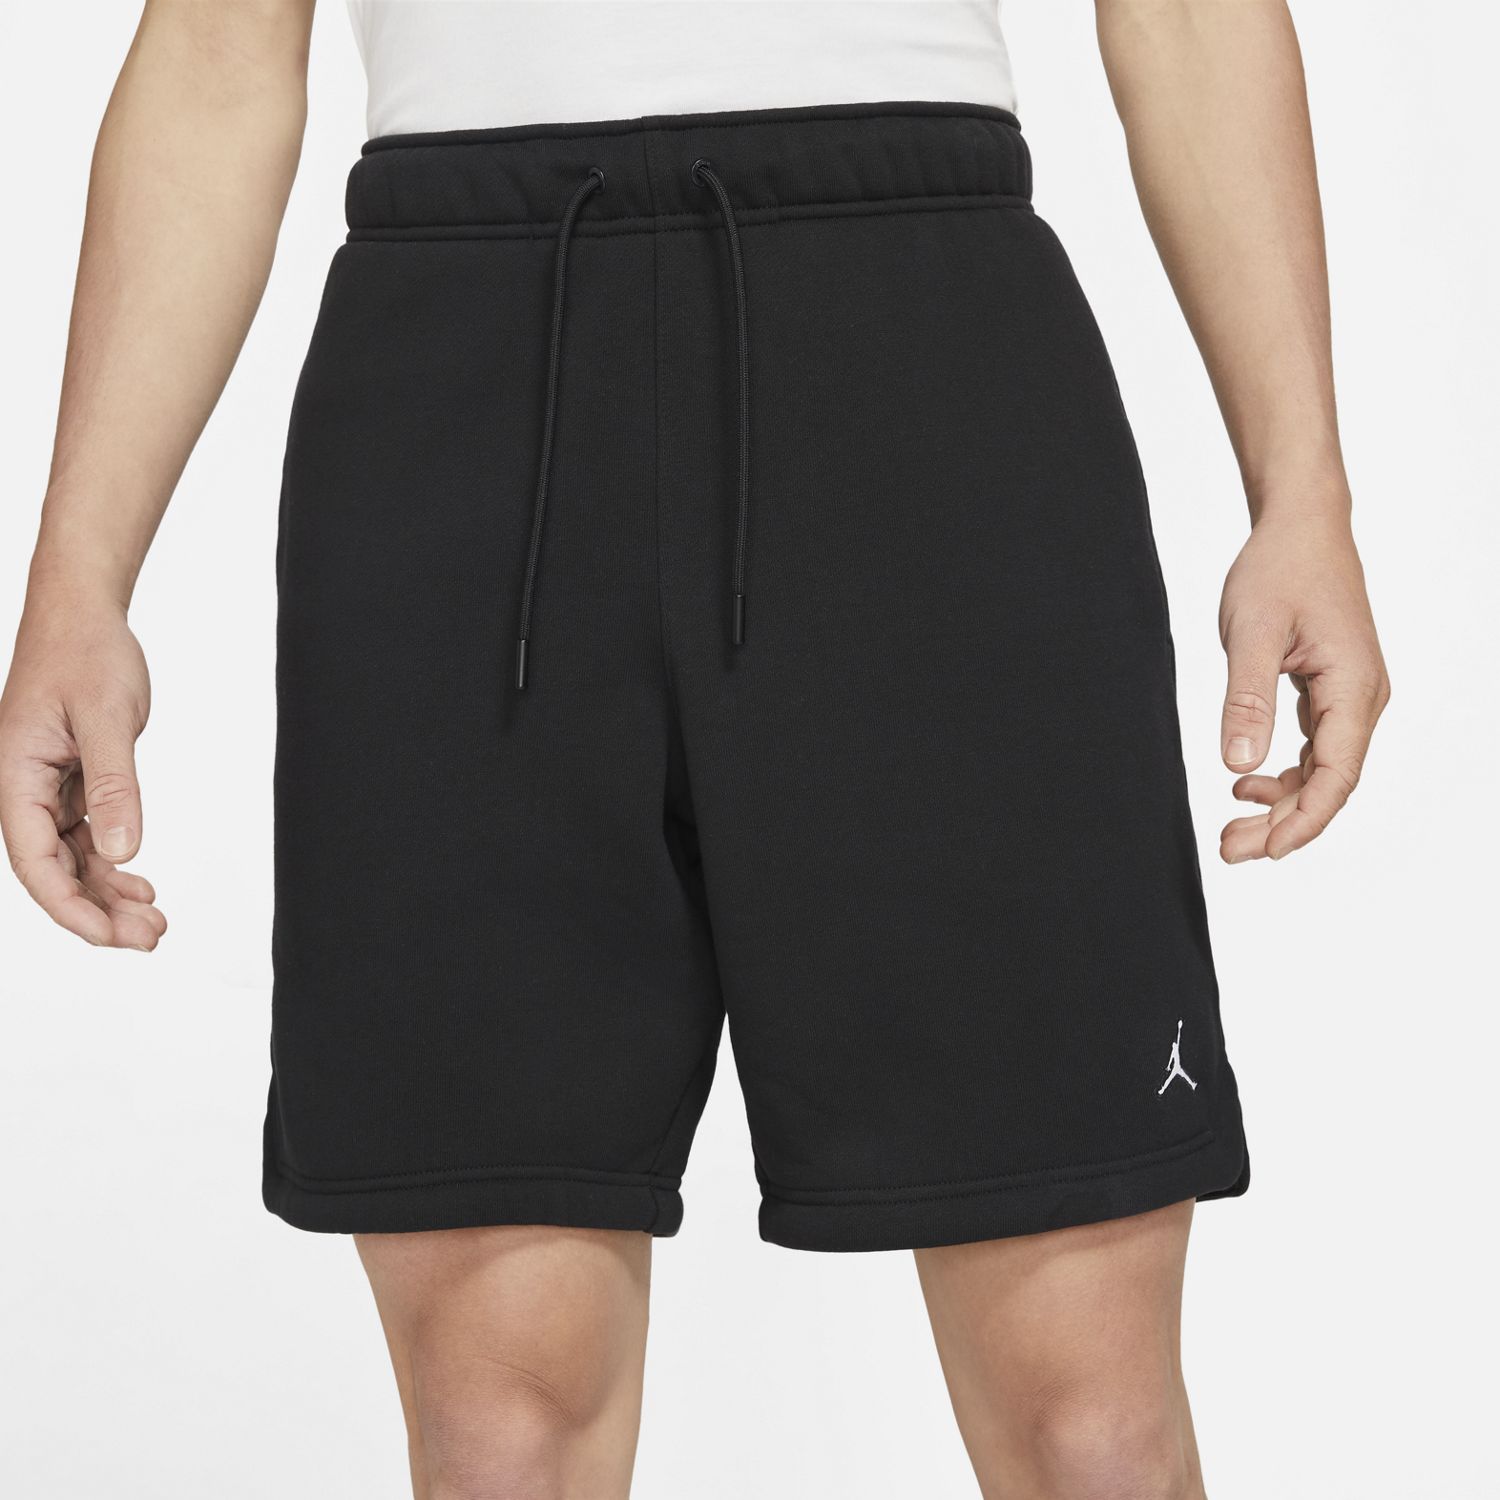 Jordan shorts